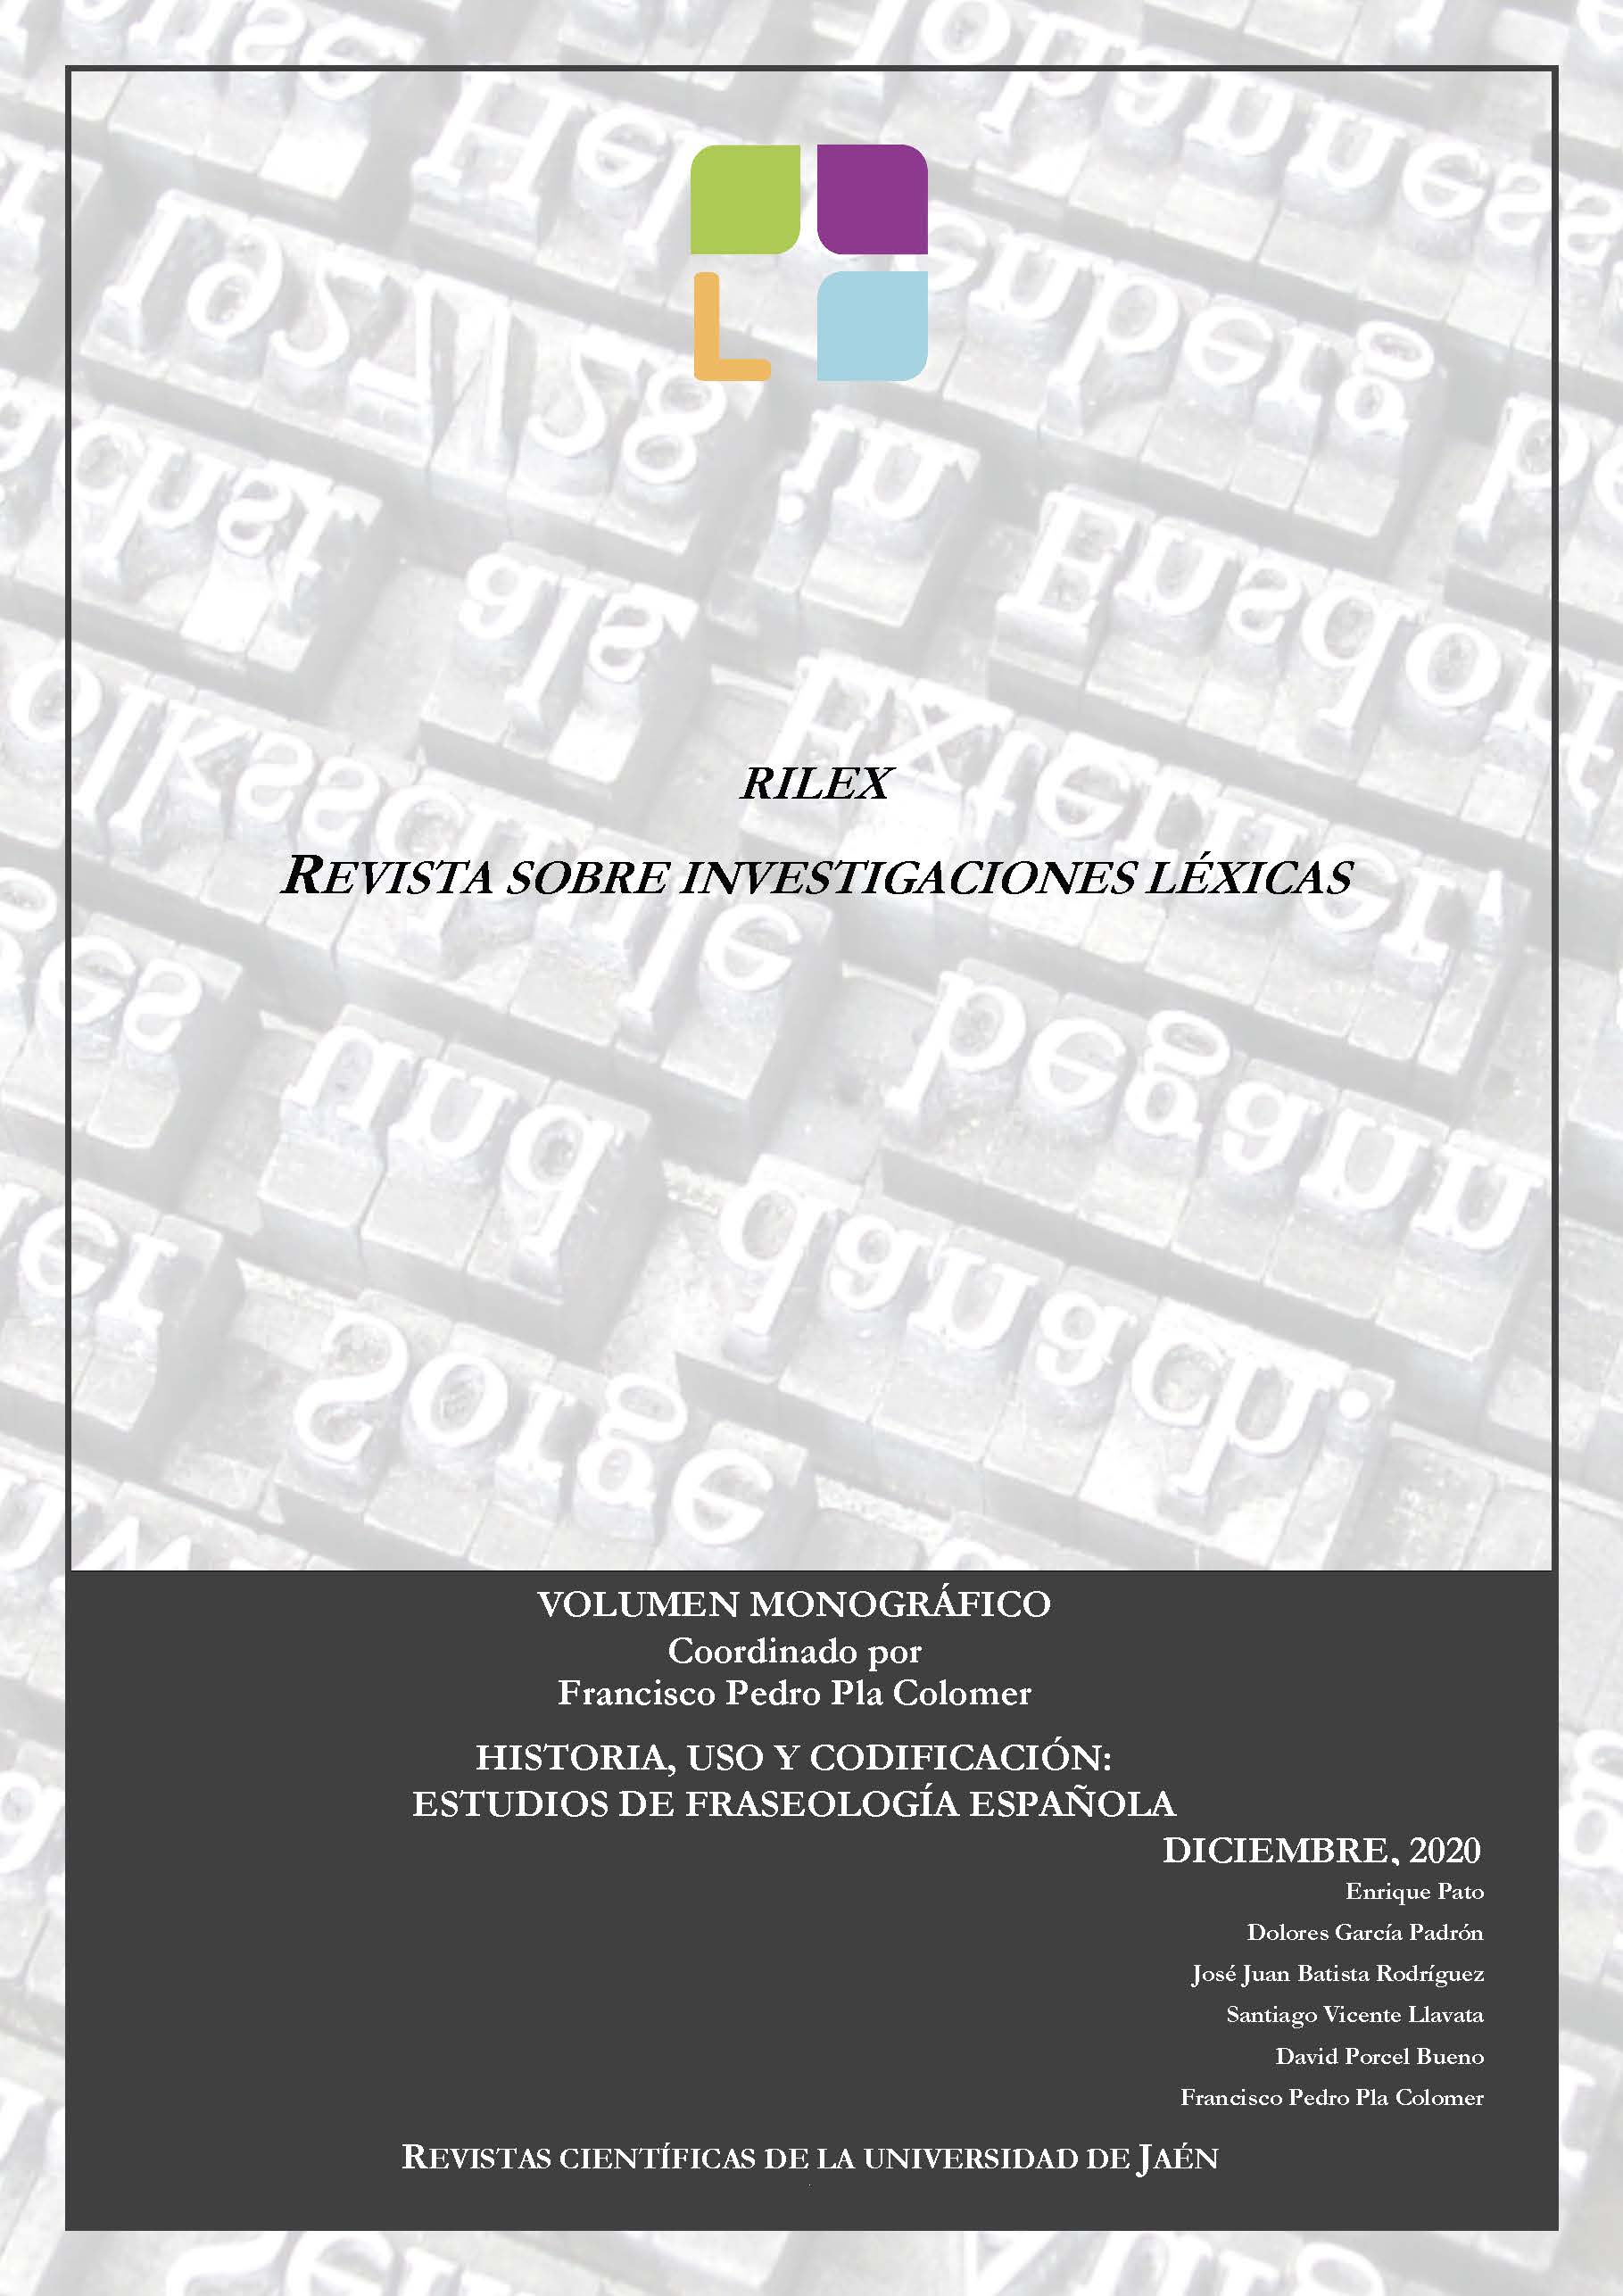 					Ver 2020: Historia, uso y codificación: estudios de fraseología española
				